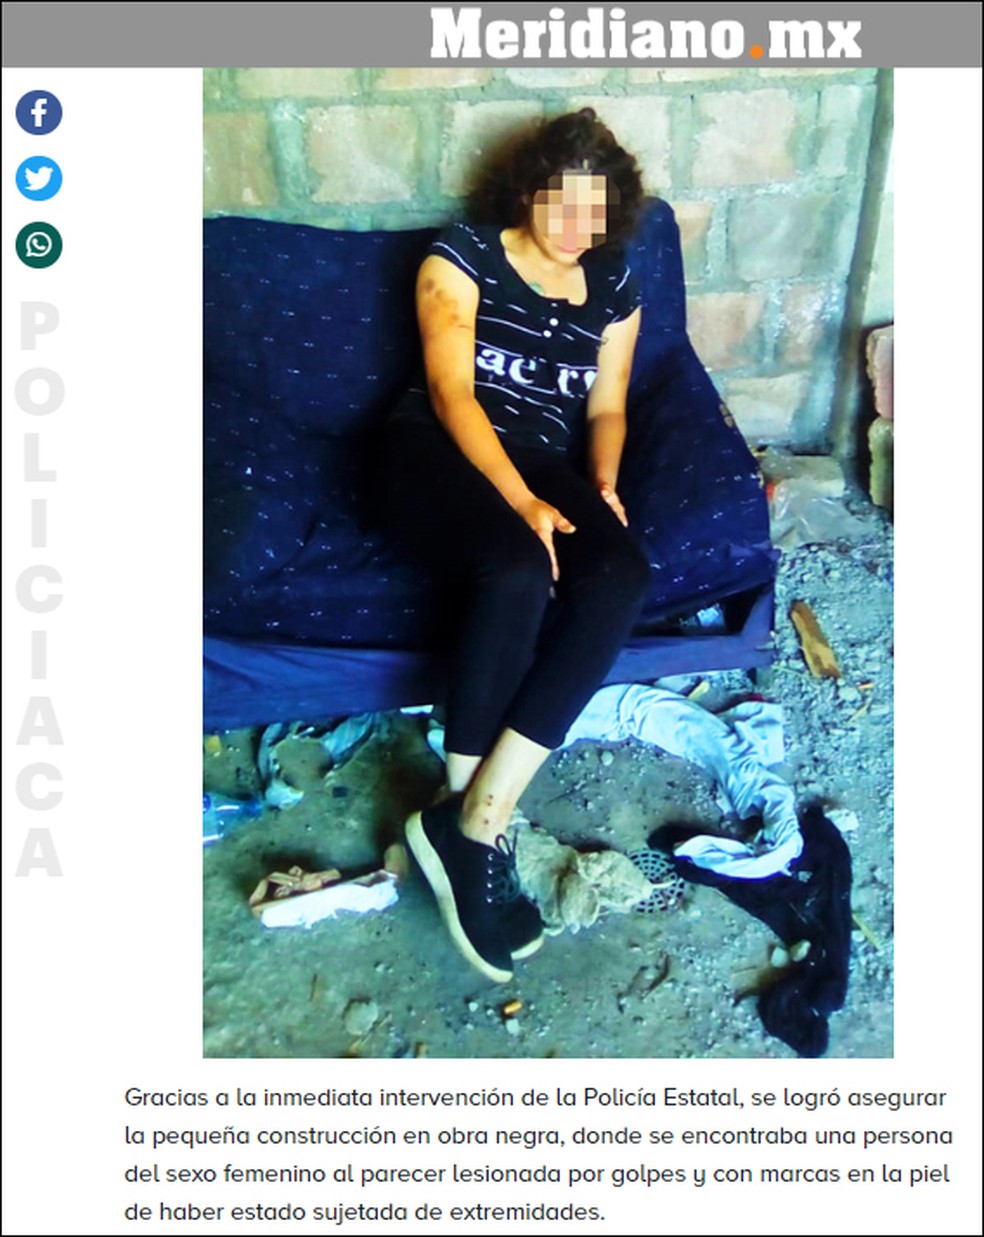 Isabella Hurtado, de 26 anos, foi encontrada amarrada e com marcas de agressÃ£o â Foto: ReproduÃ§Ã£o/Meridiano.mx